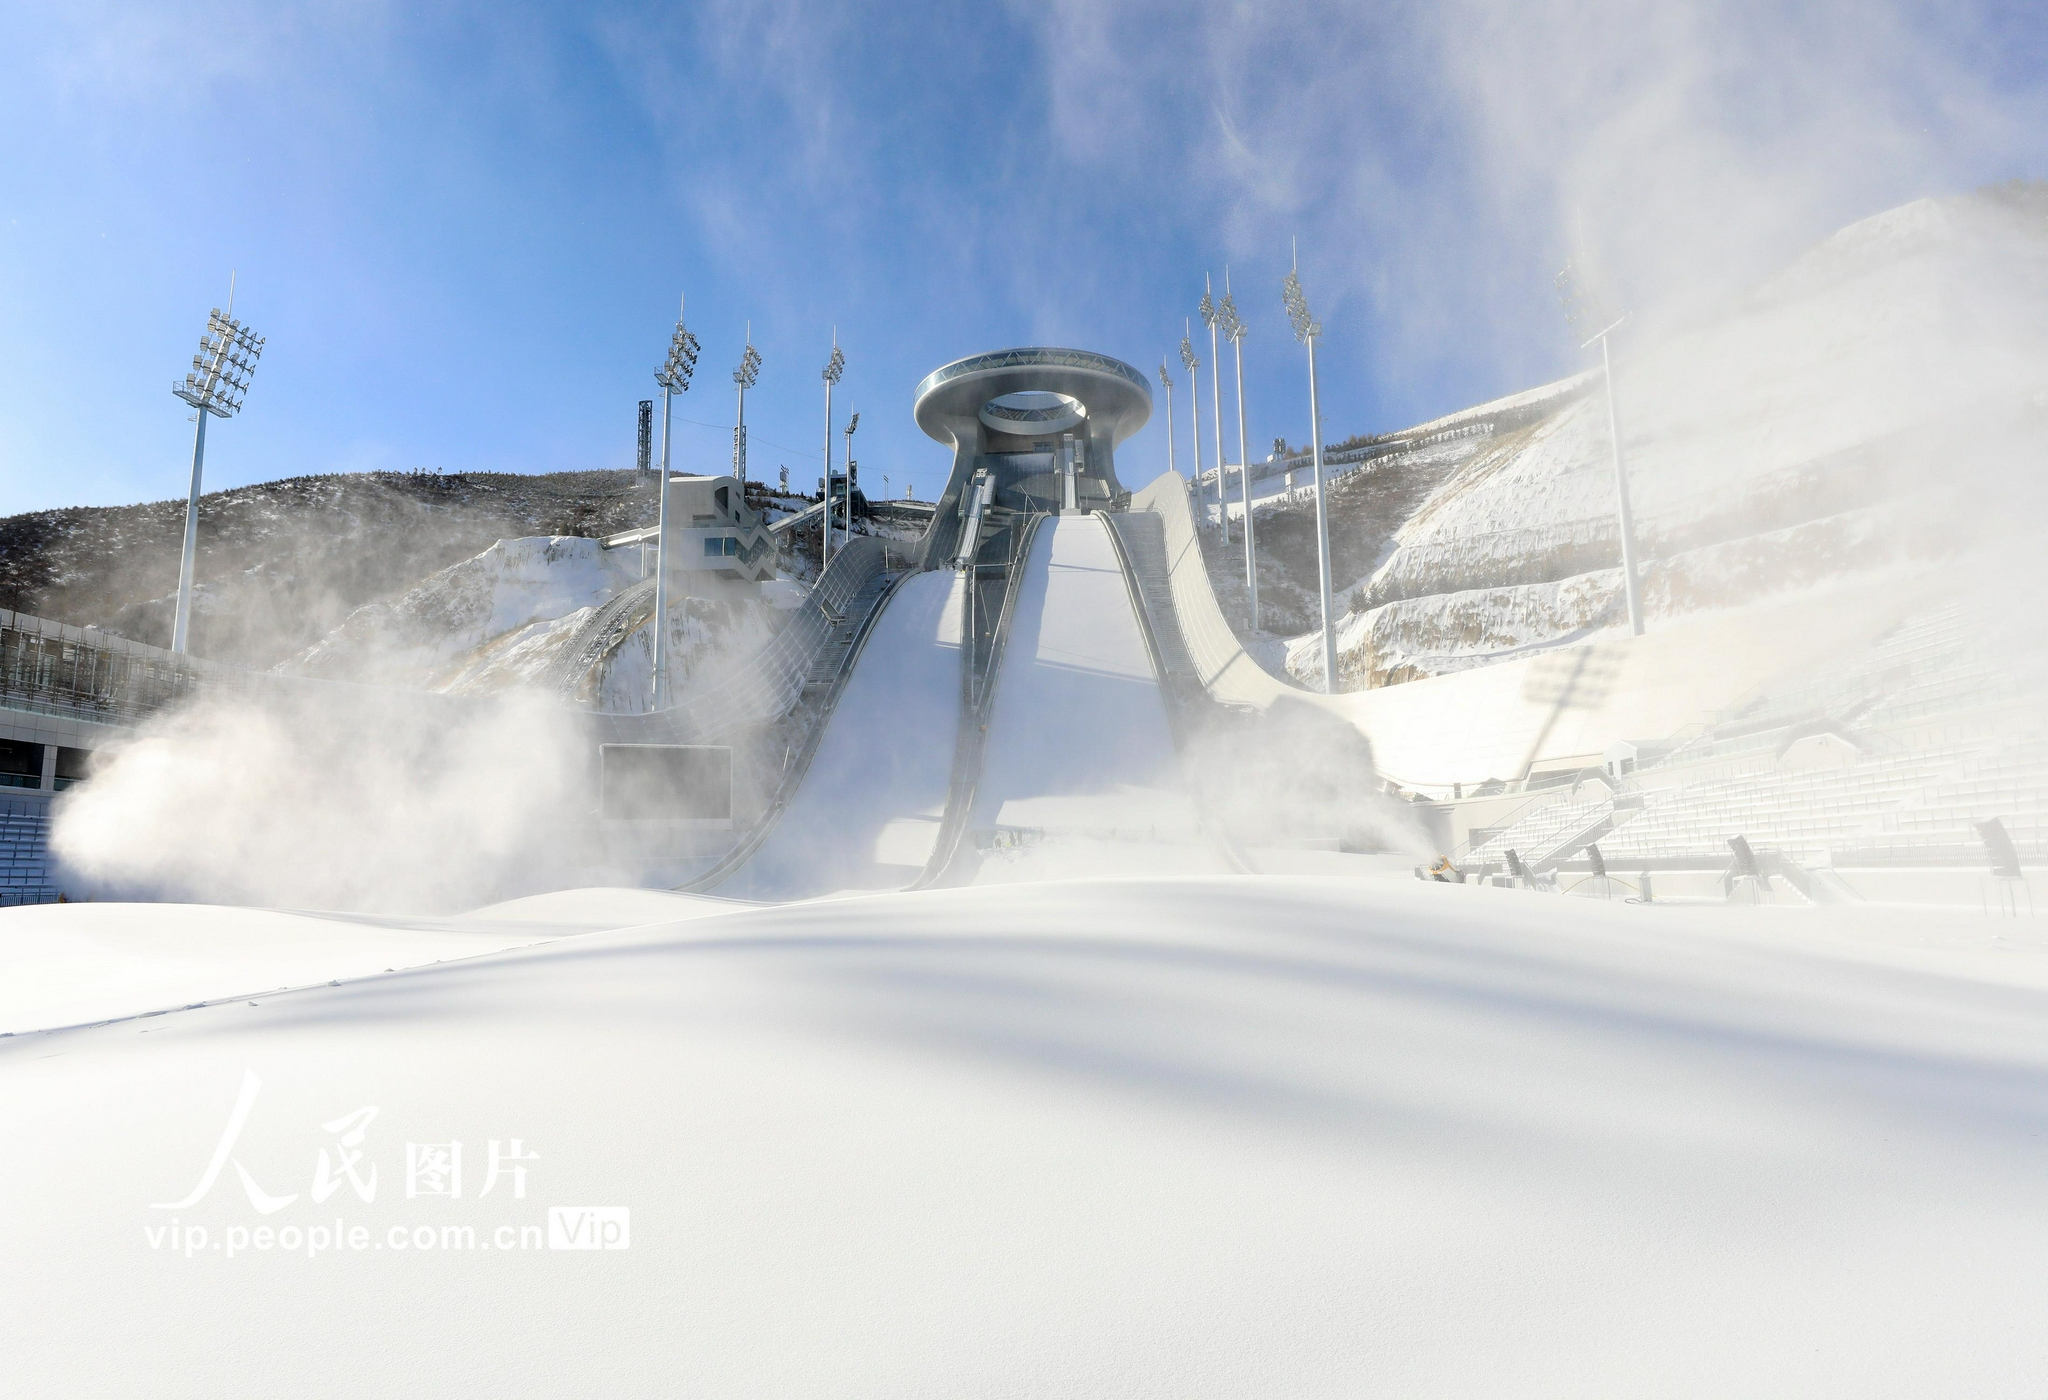 河北张家口:国家跳台滑雪中心"雪如意"开始造雪